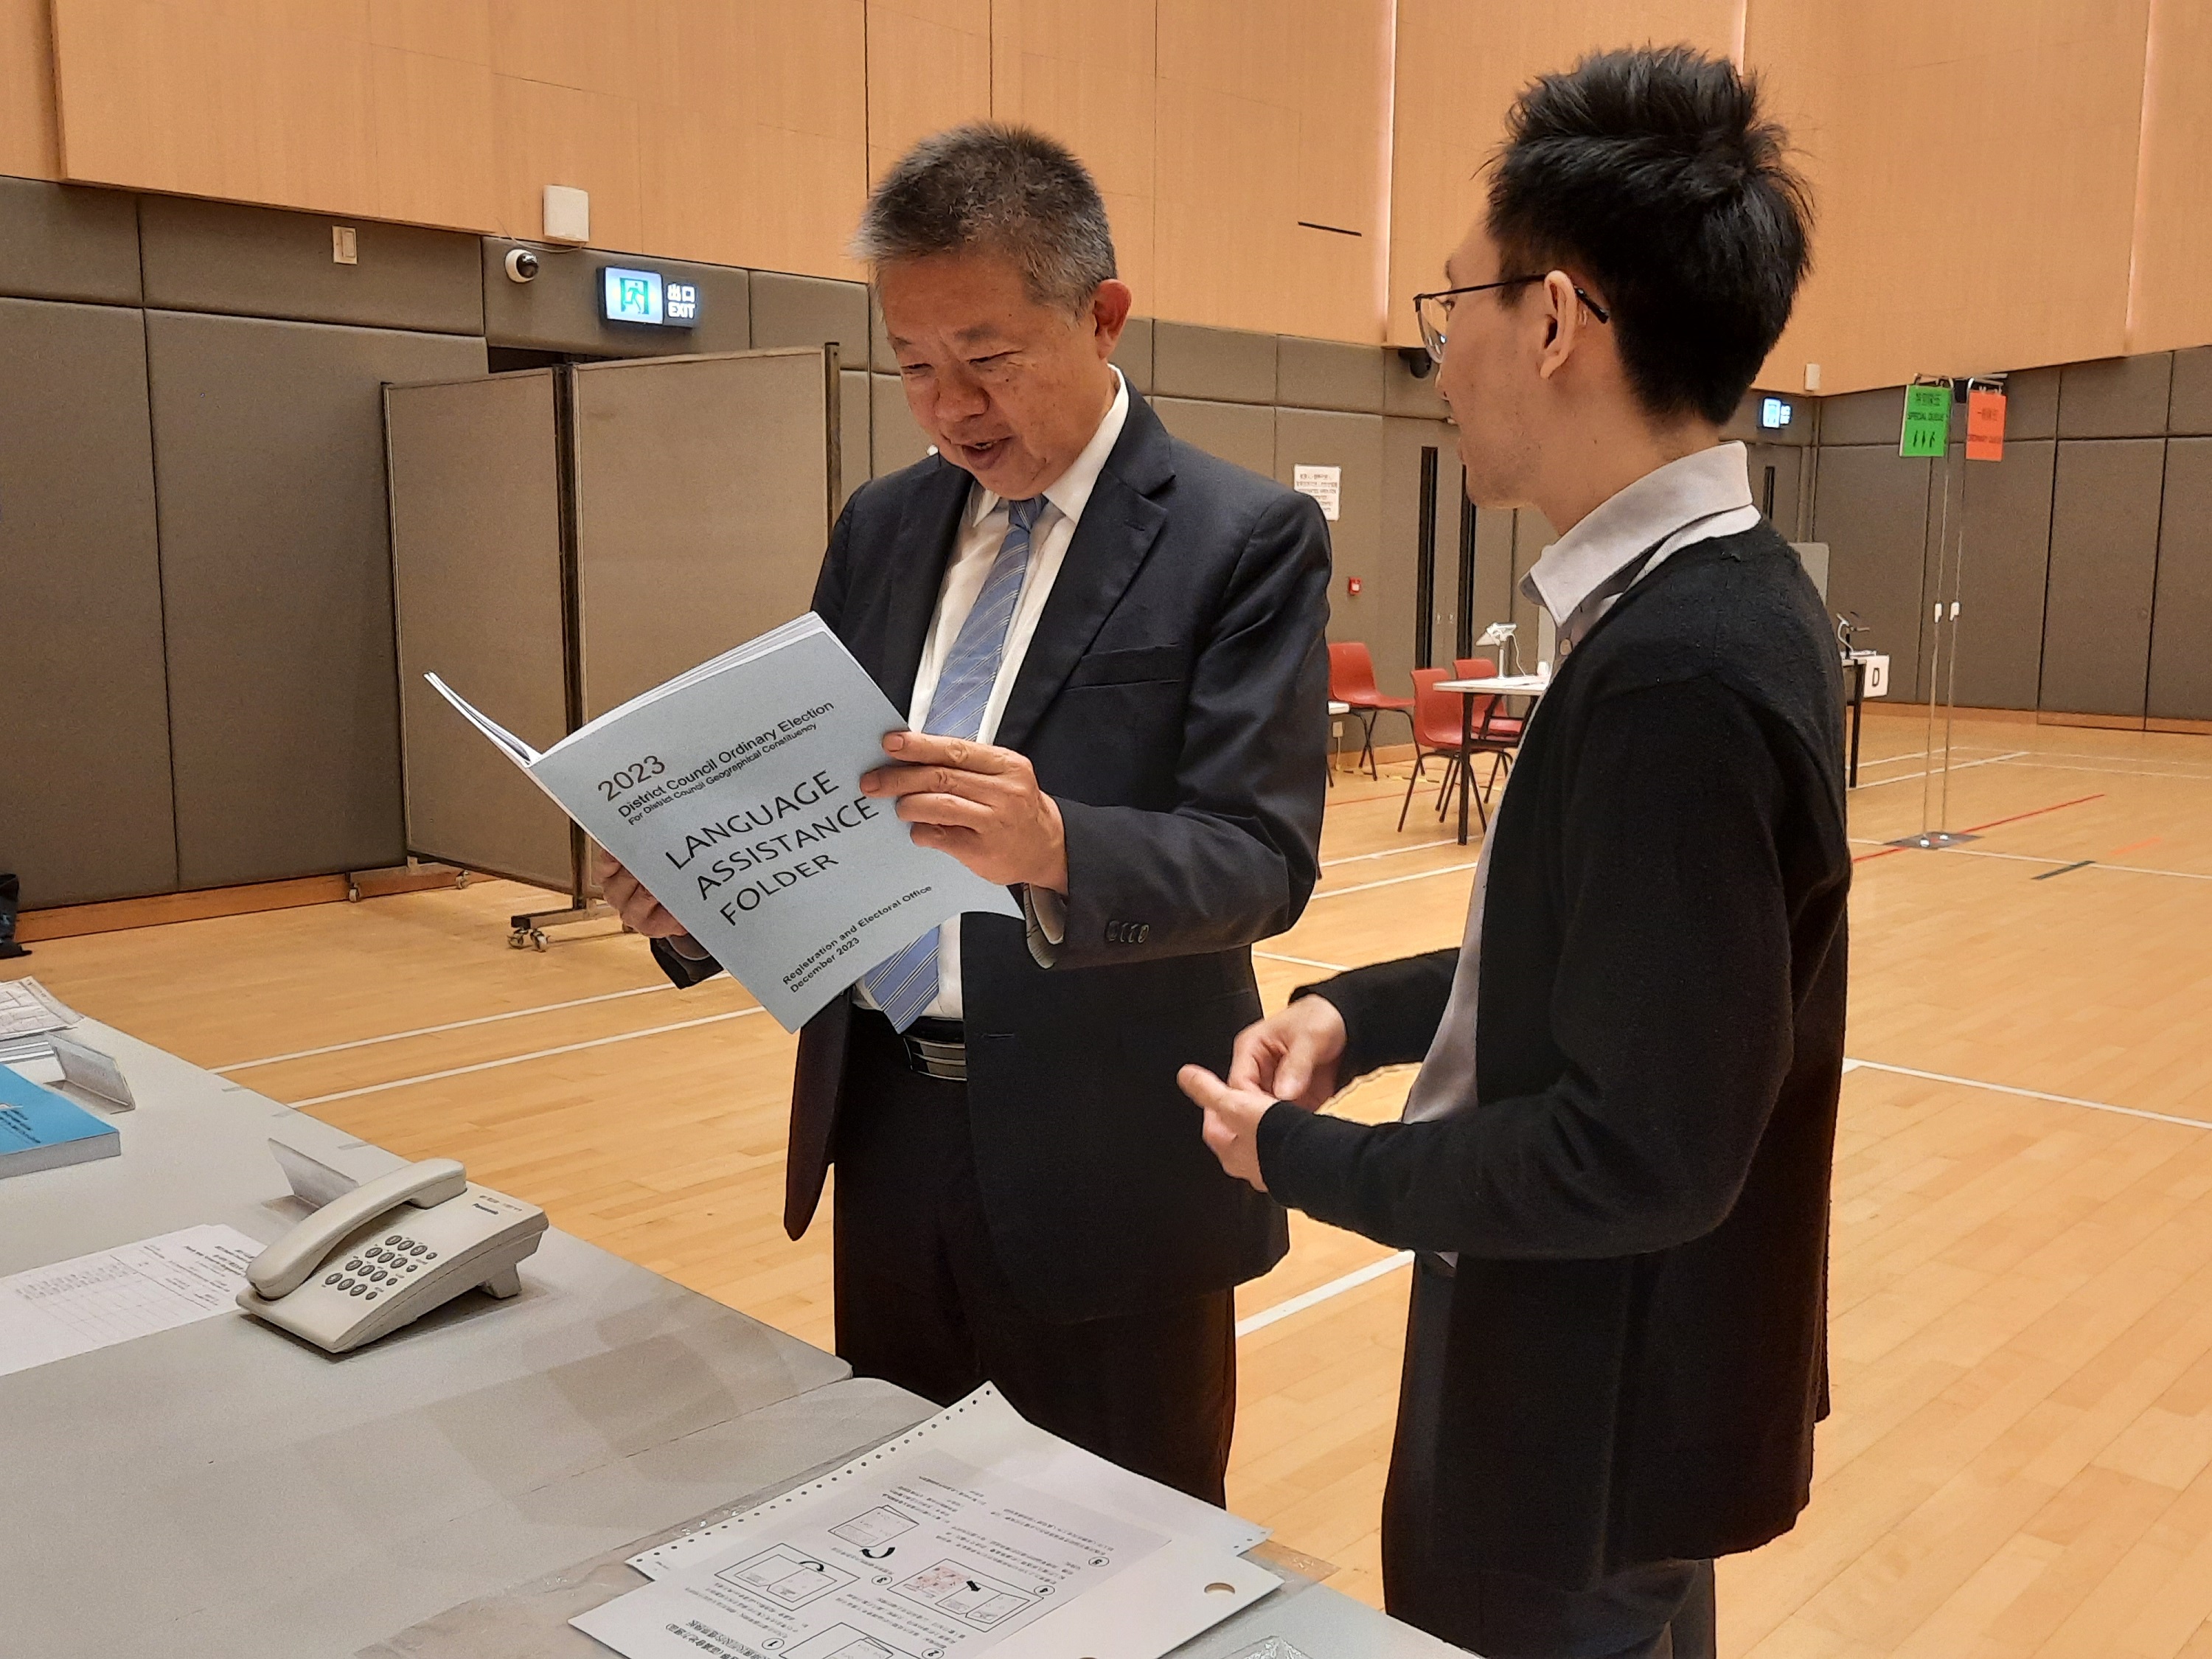 投票站備有的語言協助資料夾，除了中文、英文、日語和韓語外，提供八種不同種族語言的投票程序指引，以協助不同種族的選民投票。